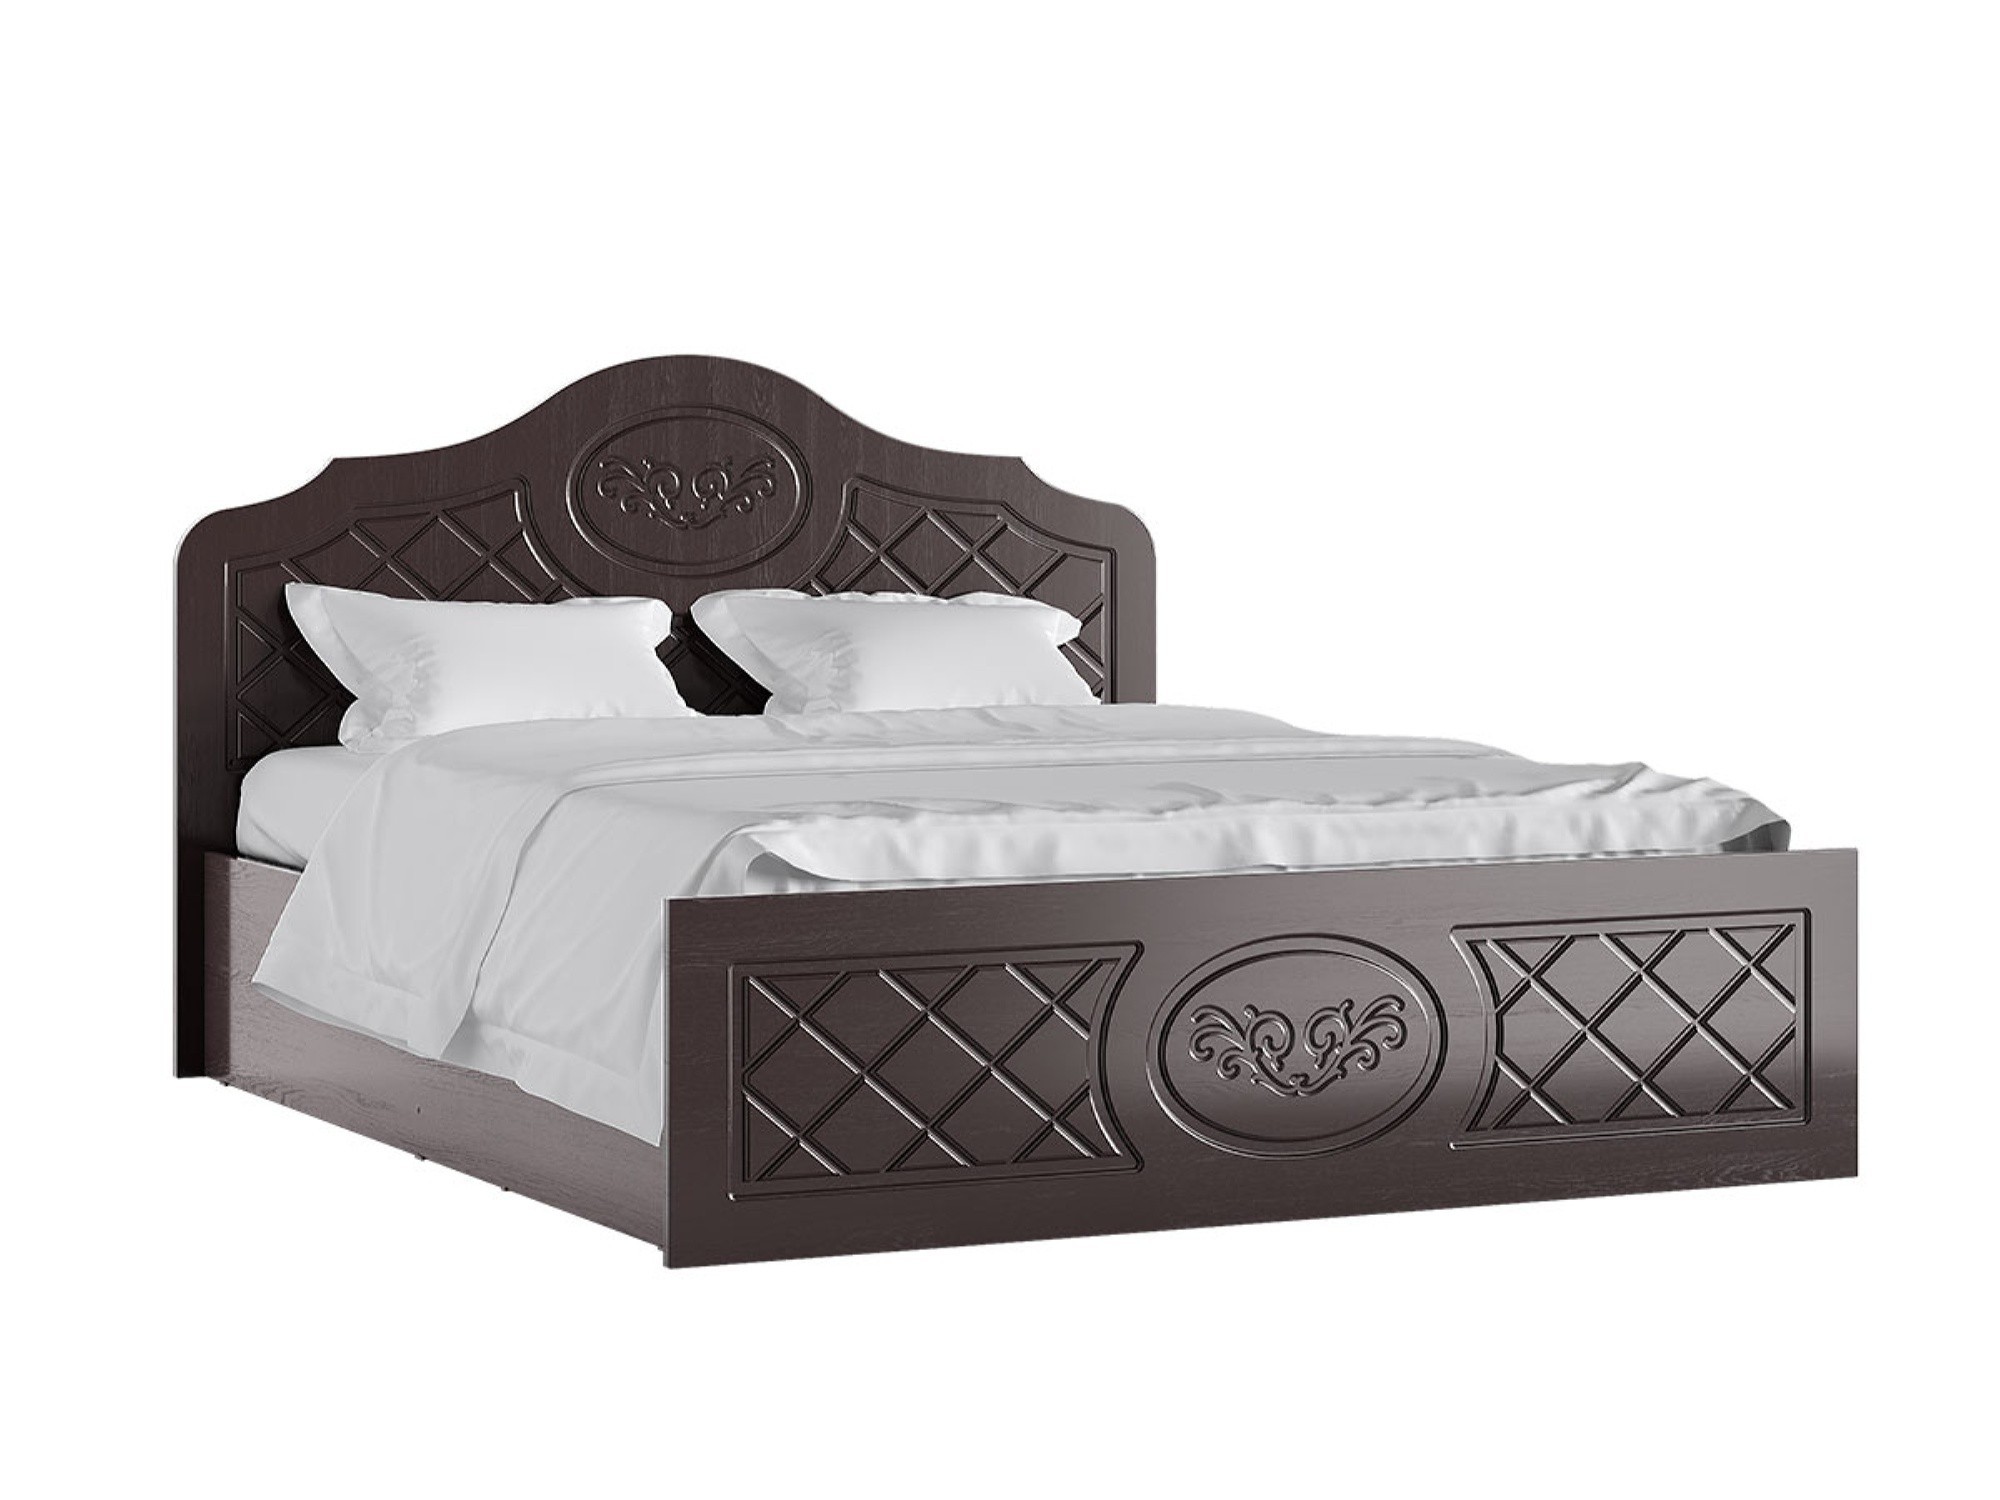 Престиж Кровать 140 (Венге шоколад) Венге шоколад, МДФ, ЛДСП престиж кровать 140 венге шоколад венге шоколад лдсп